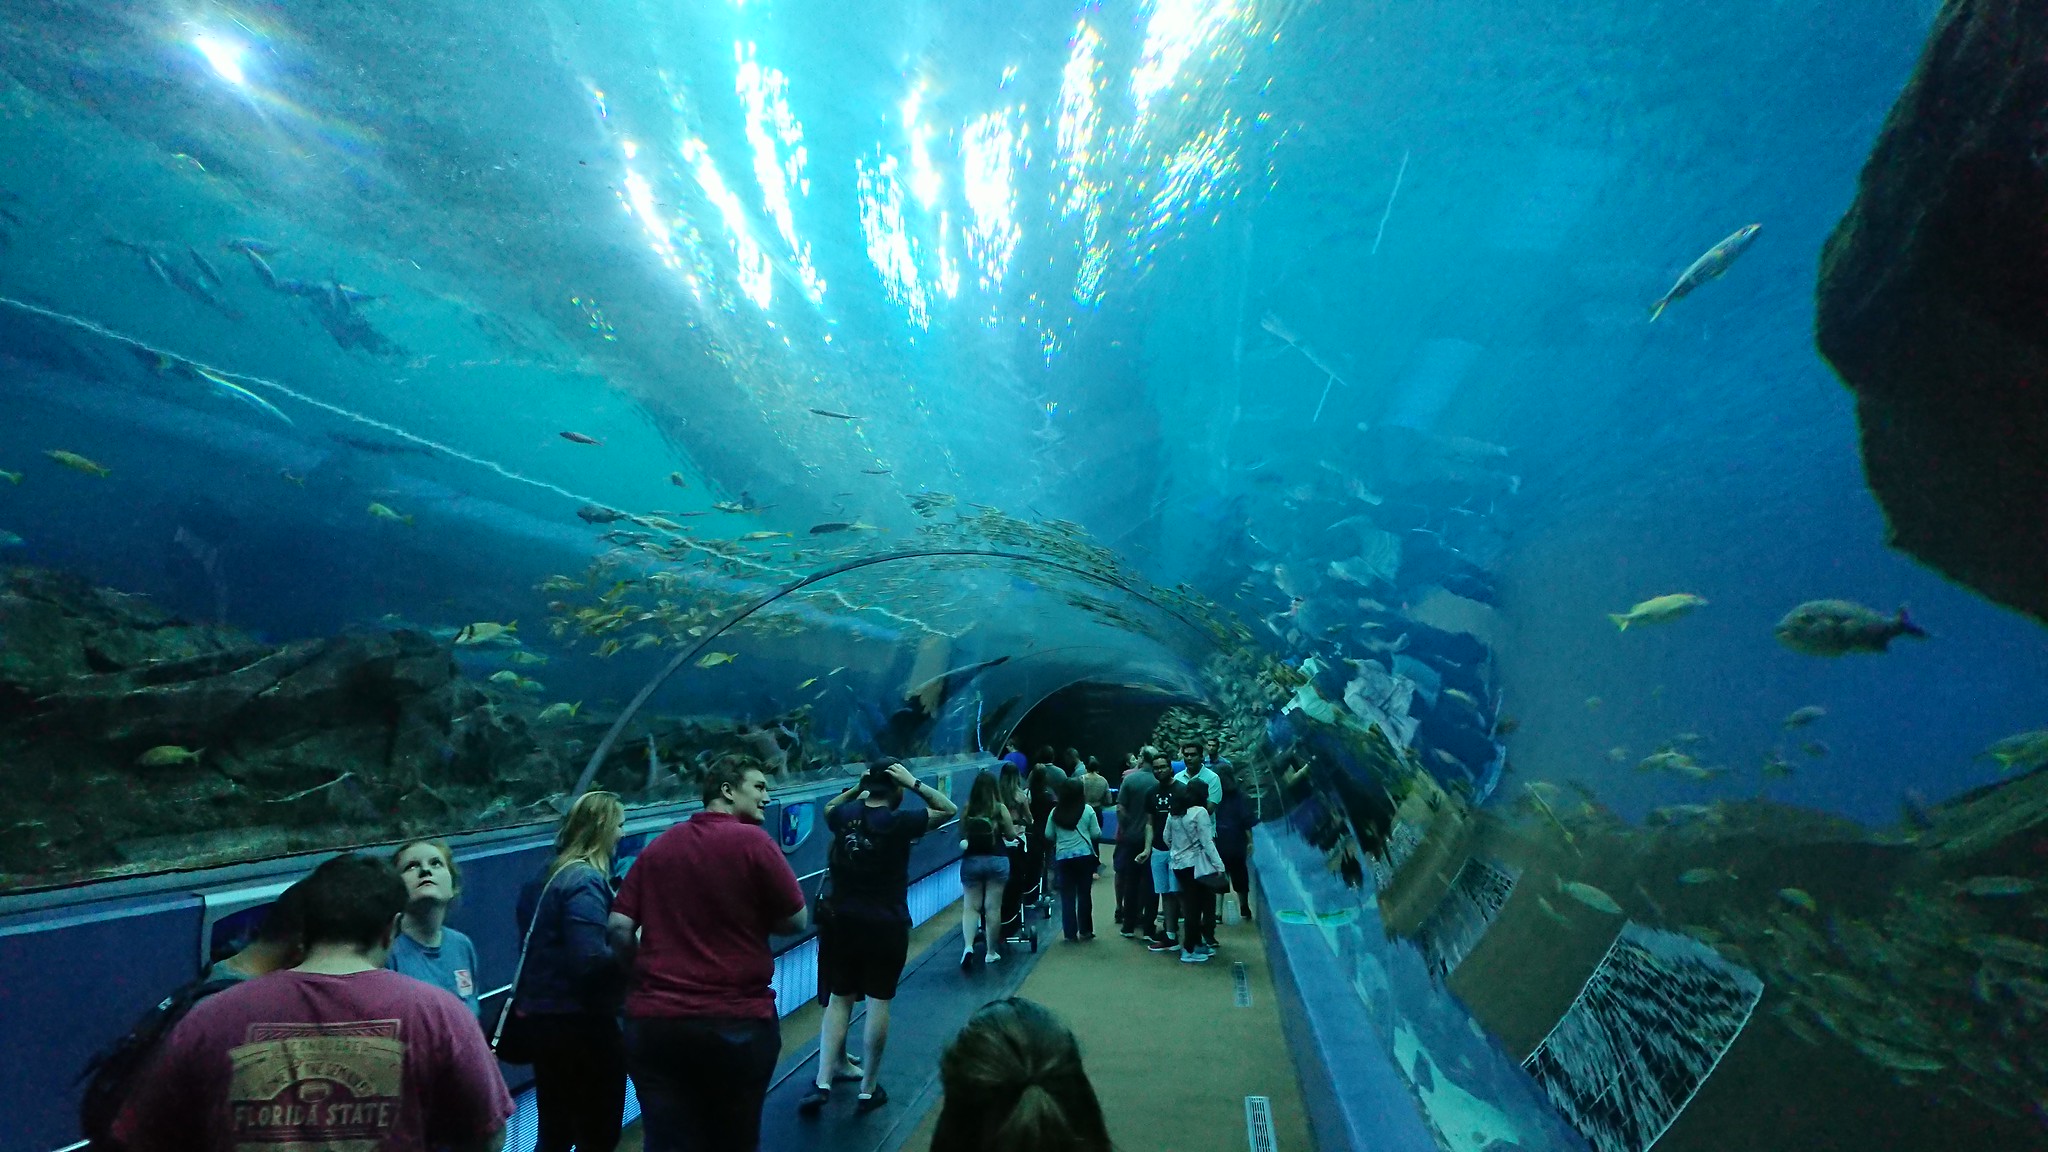 Georgia Aquarium - Atlanta, GA